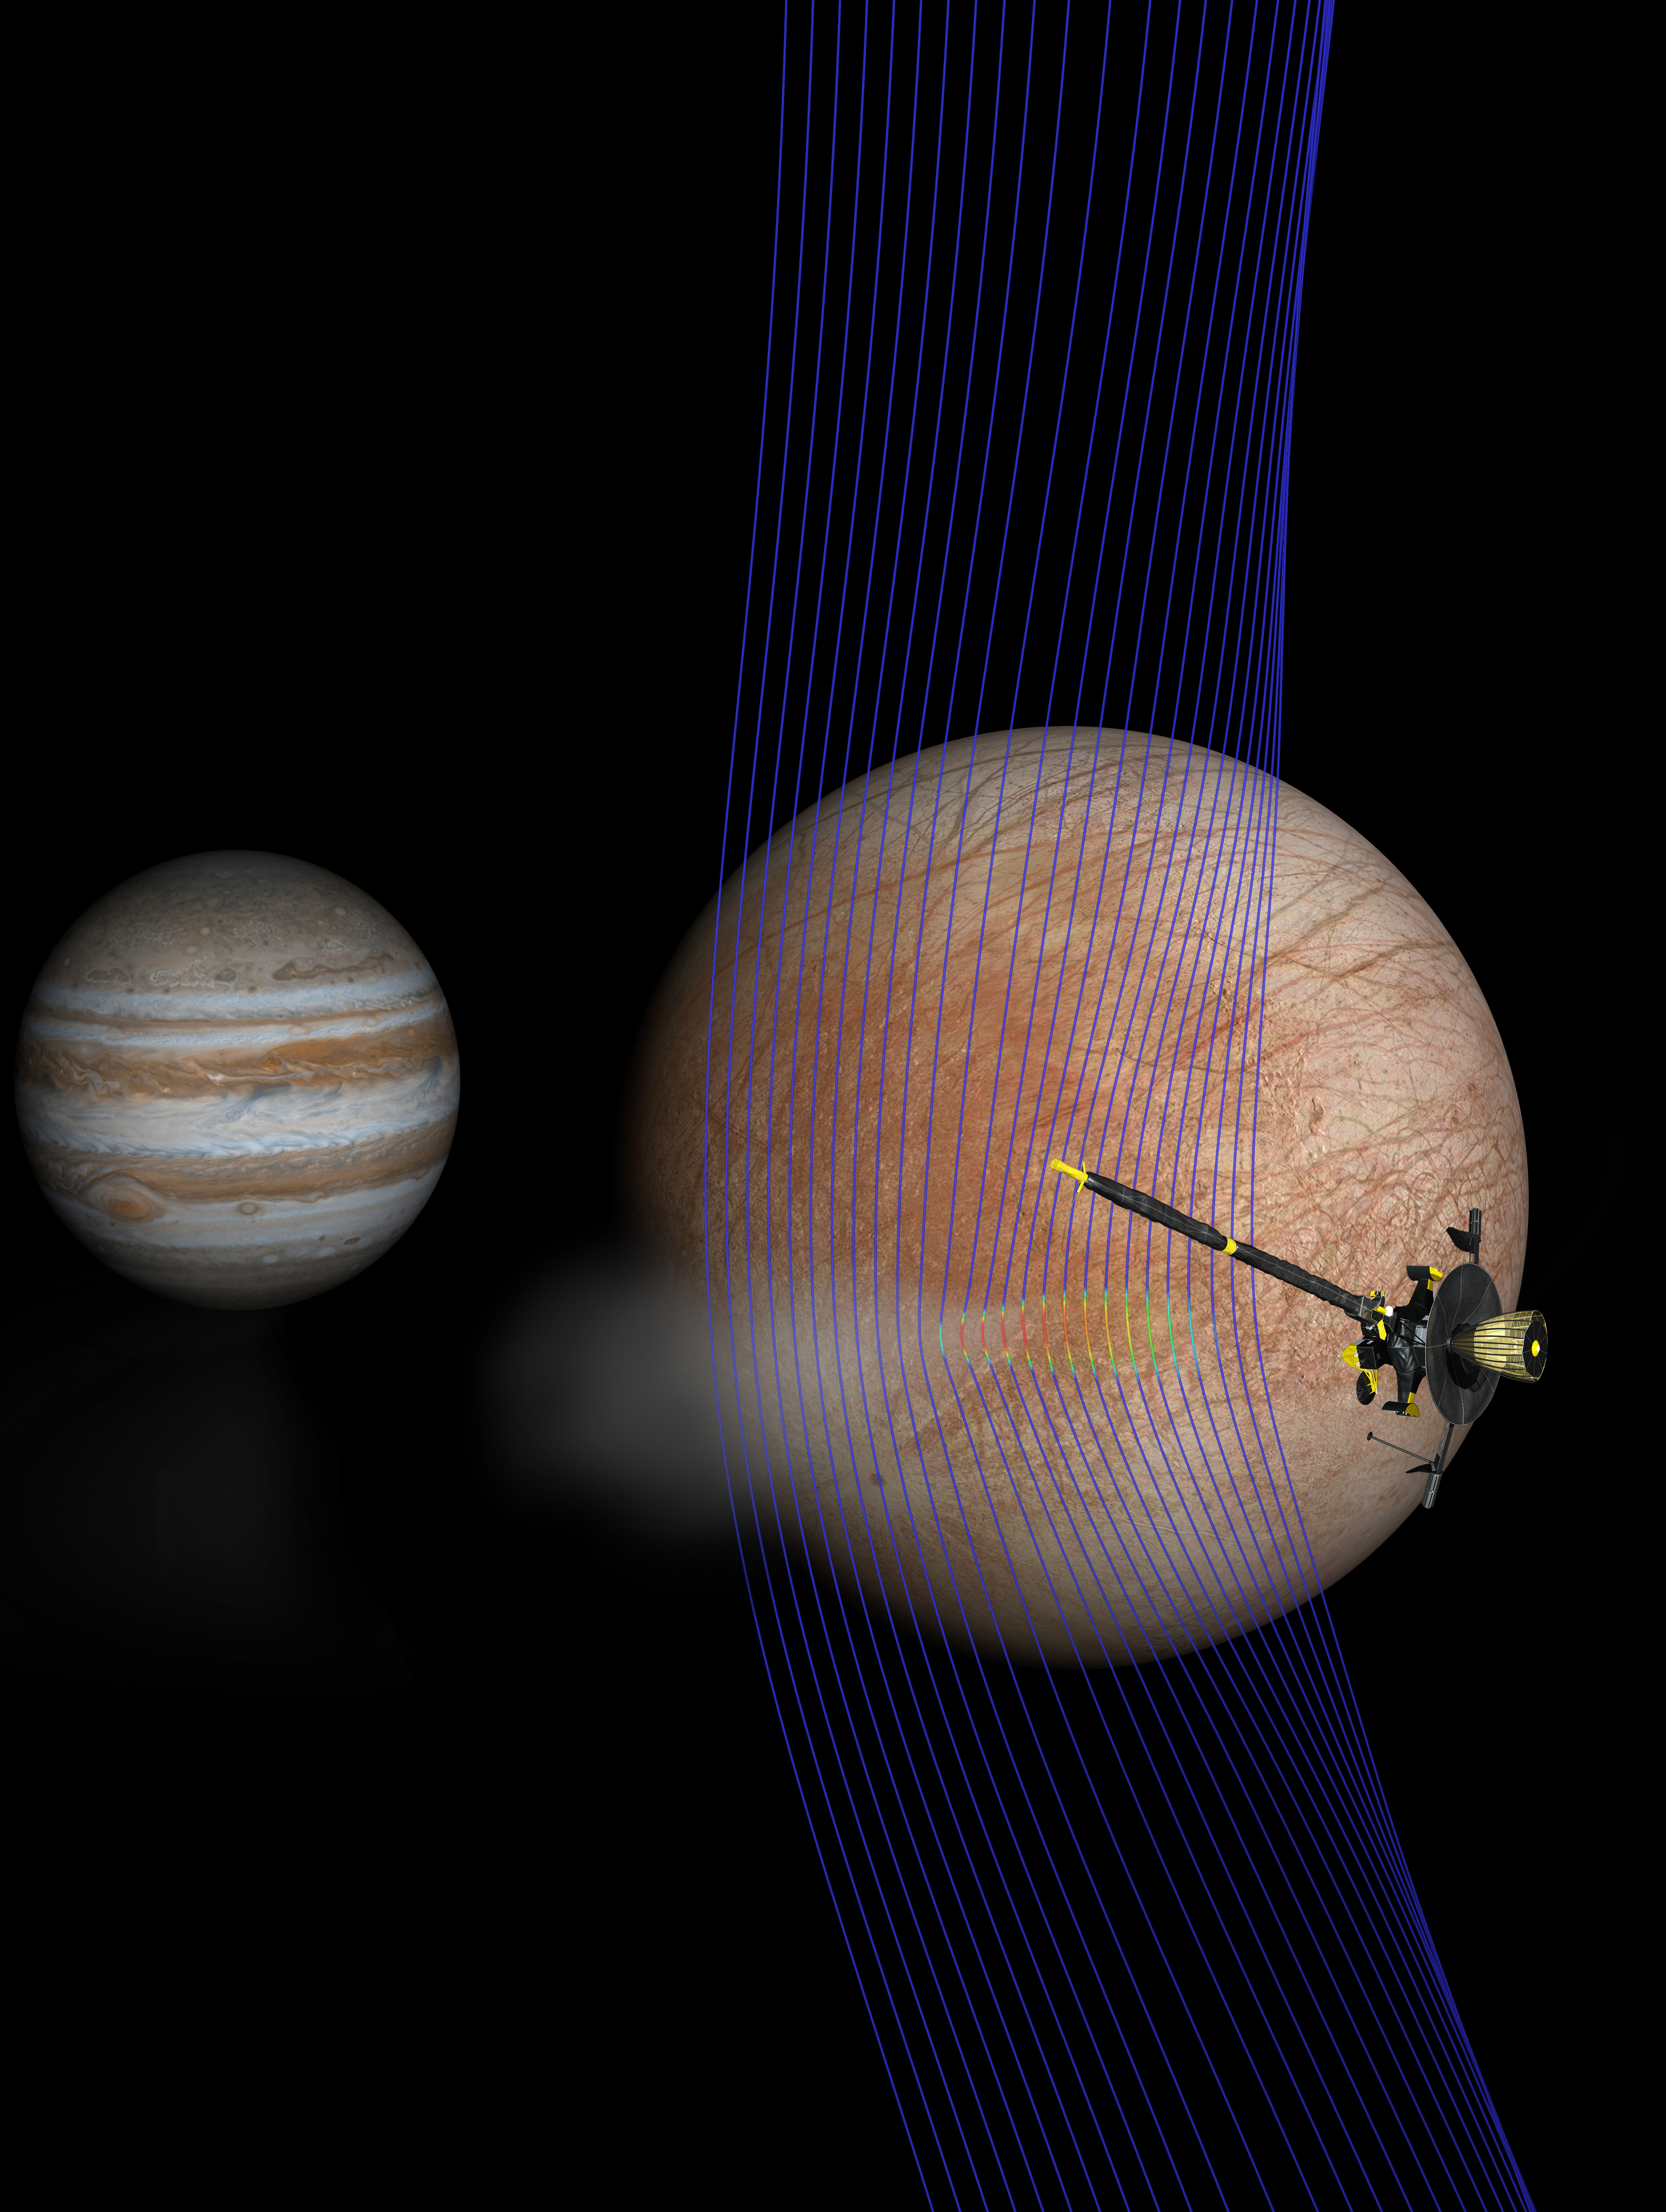 Ilustración artística de Júpiter y Europa (en primer plano) con la nave espacial Galileo después  de haber sobrevolado una pluma que sale de la superficie de Europa. Las líneas del campo magnético (representadas en azul) muestran cómo la pluma interactúa con el flujo ambiental del plasma de Júpiter. Los colores rojos en las líneas muestran áreas más densas de plasma. Credits: NASA/JPL-Caltech/Univ. of Michigan.